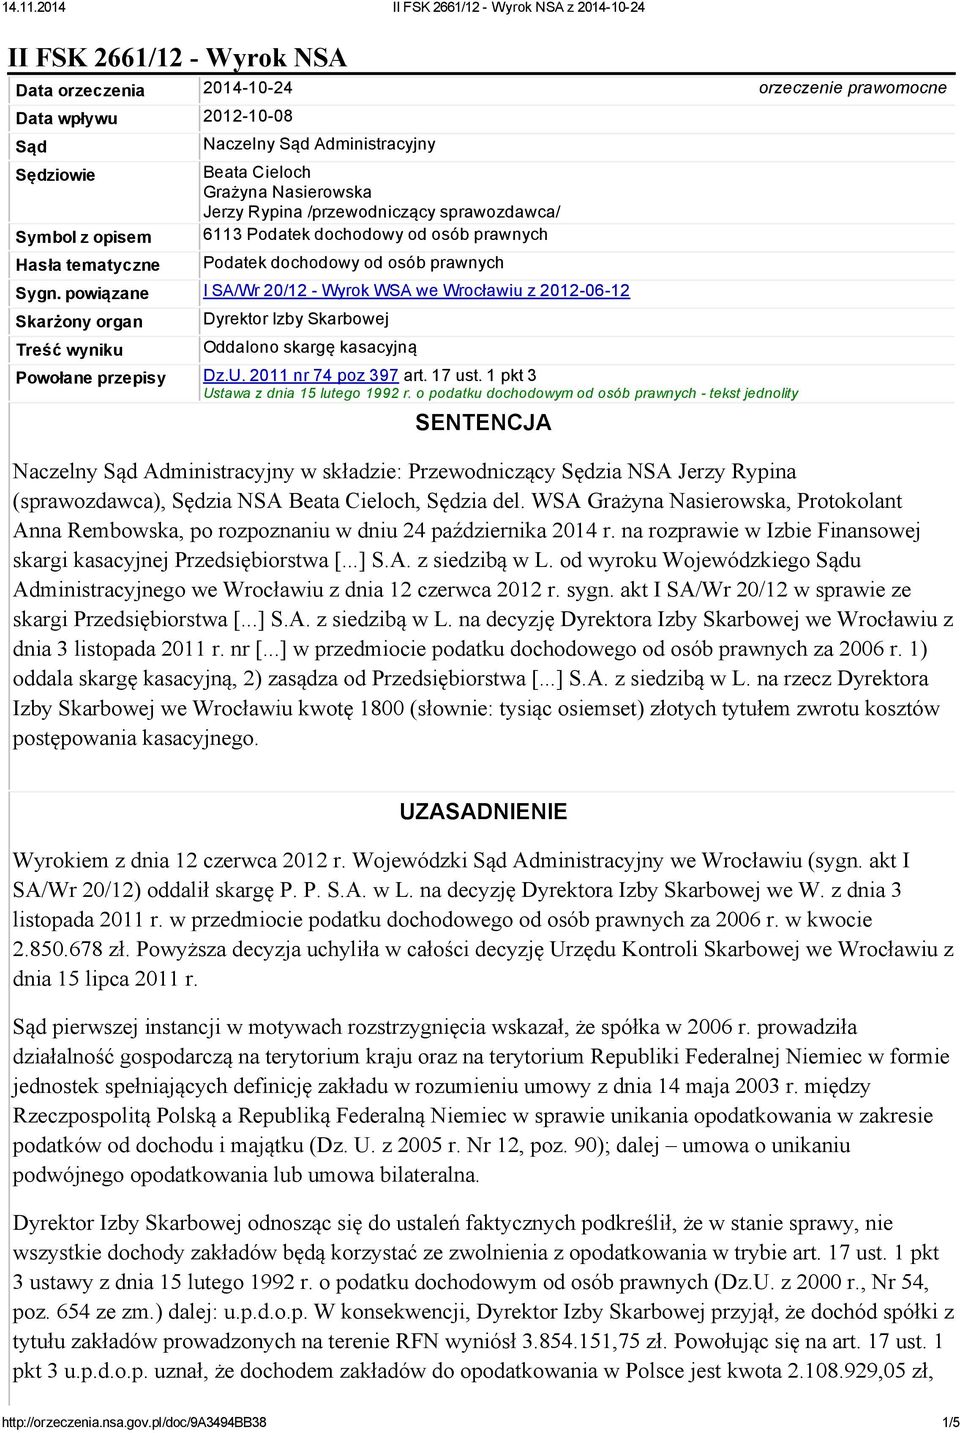 powiązane I SA/Wr 20/12 - Wyrok WSA we Wrocławiu z 2012-06-12 Skarżony organ Treść wyniku Dyrektor Izby Skarbowej Oddalono skargę kasacyjną Powołane przepisy Dz.U. 2011 nr 74 poz 397 art. 17 ust.